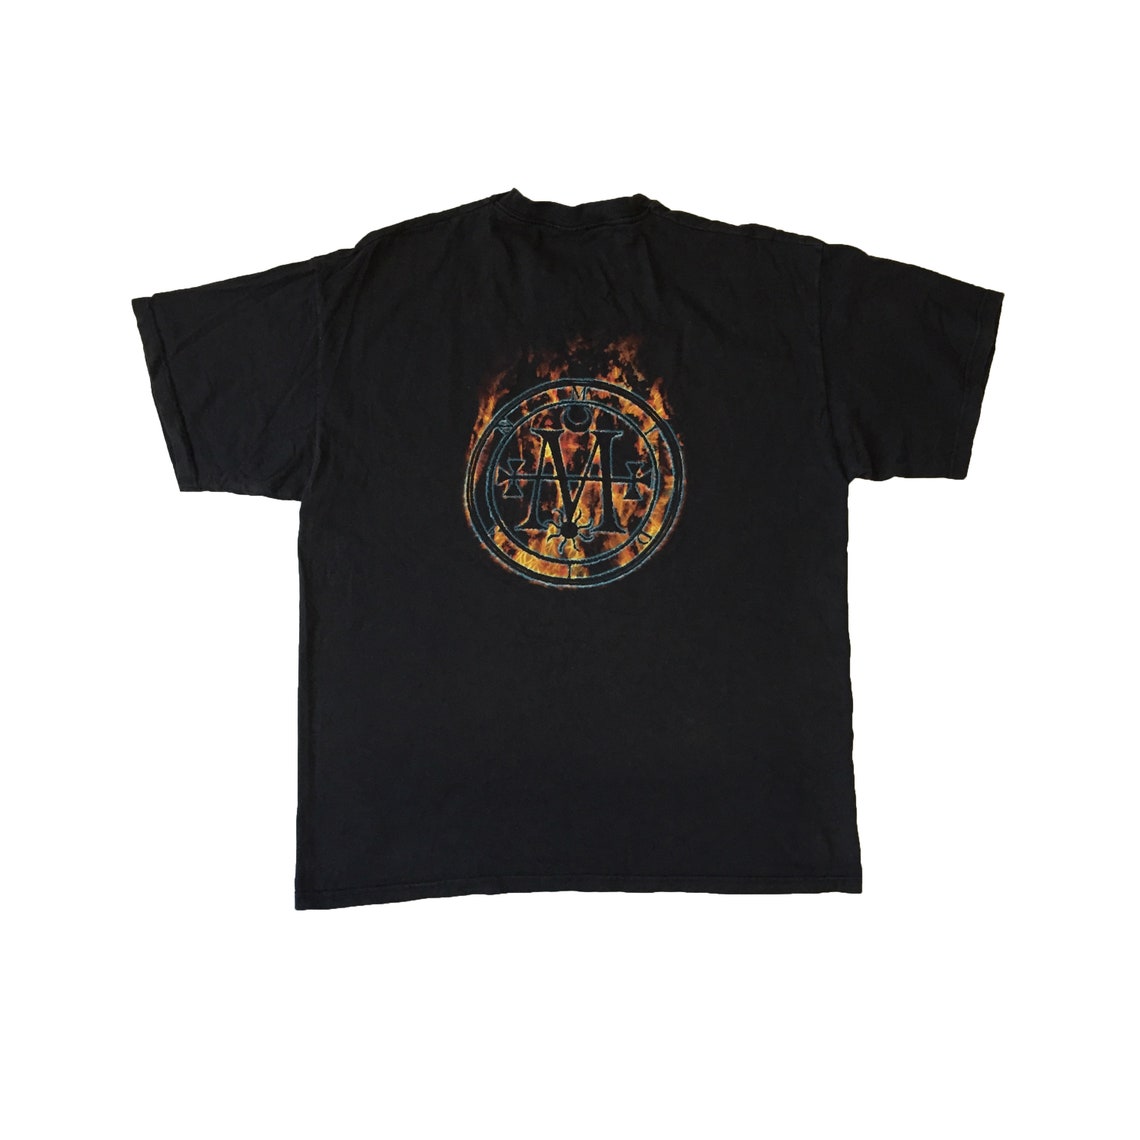 Vintage Cradle of Filth T-shirt Rare Gothic Rock Black Death - Etsy UK